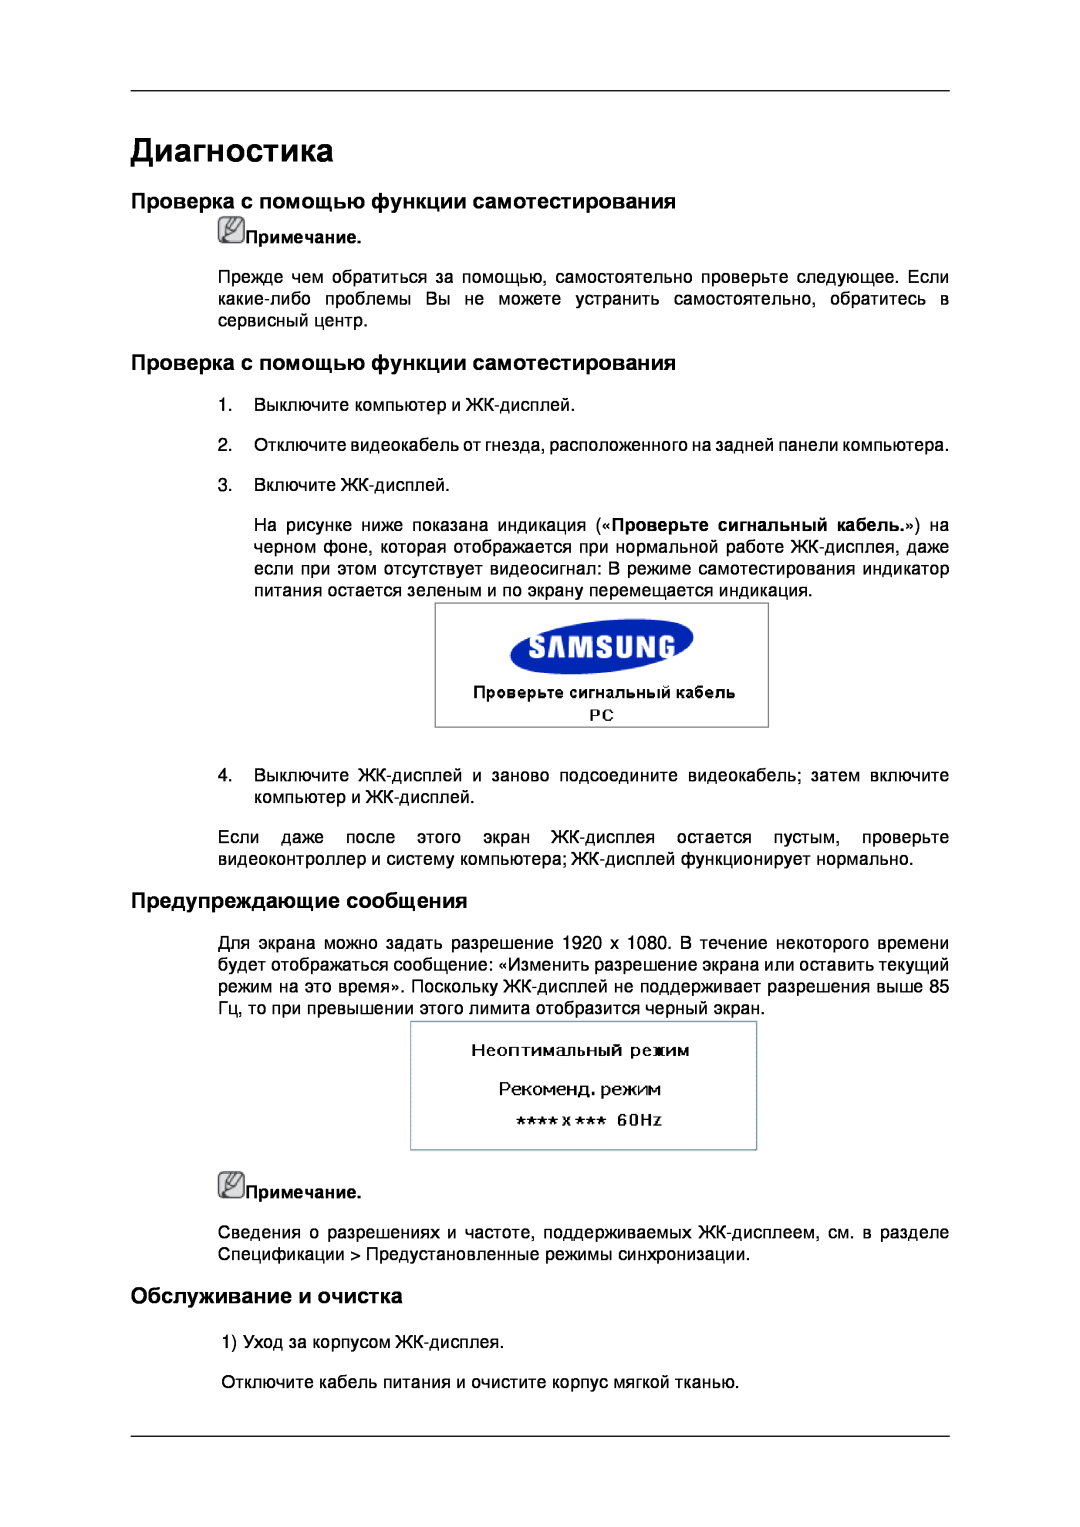 Samsung LH40MRPLBF/EN Диагностика, Проверка с помощью функции самотестирования, Предупреждающие сообщения, Примечание 